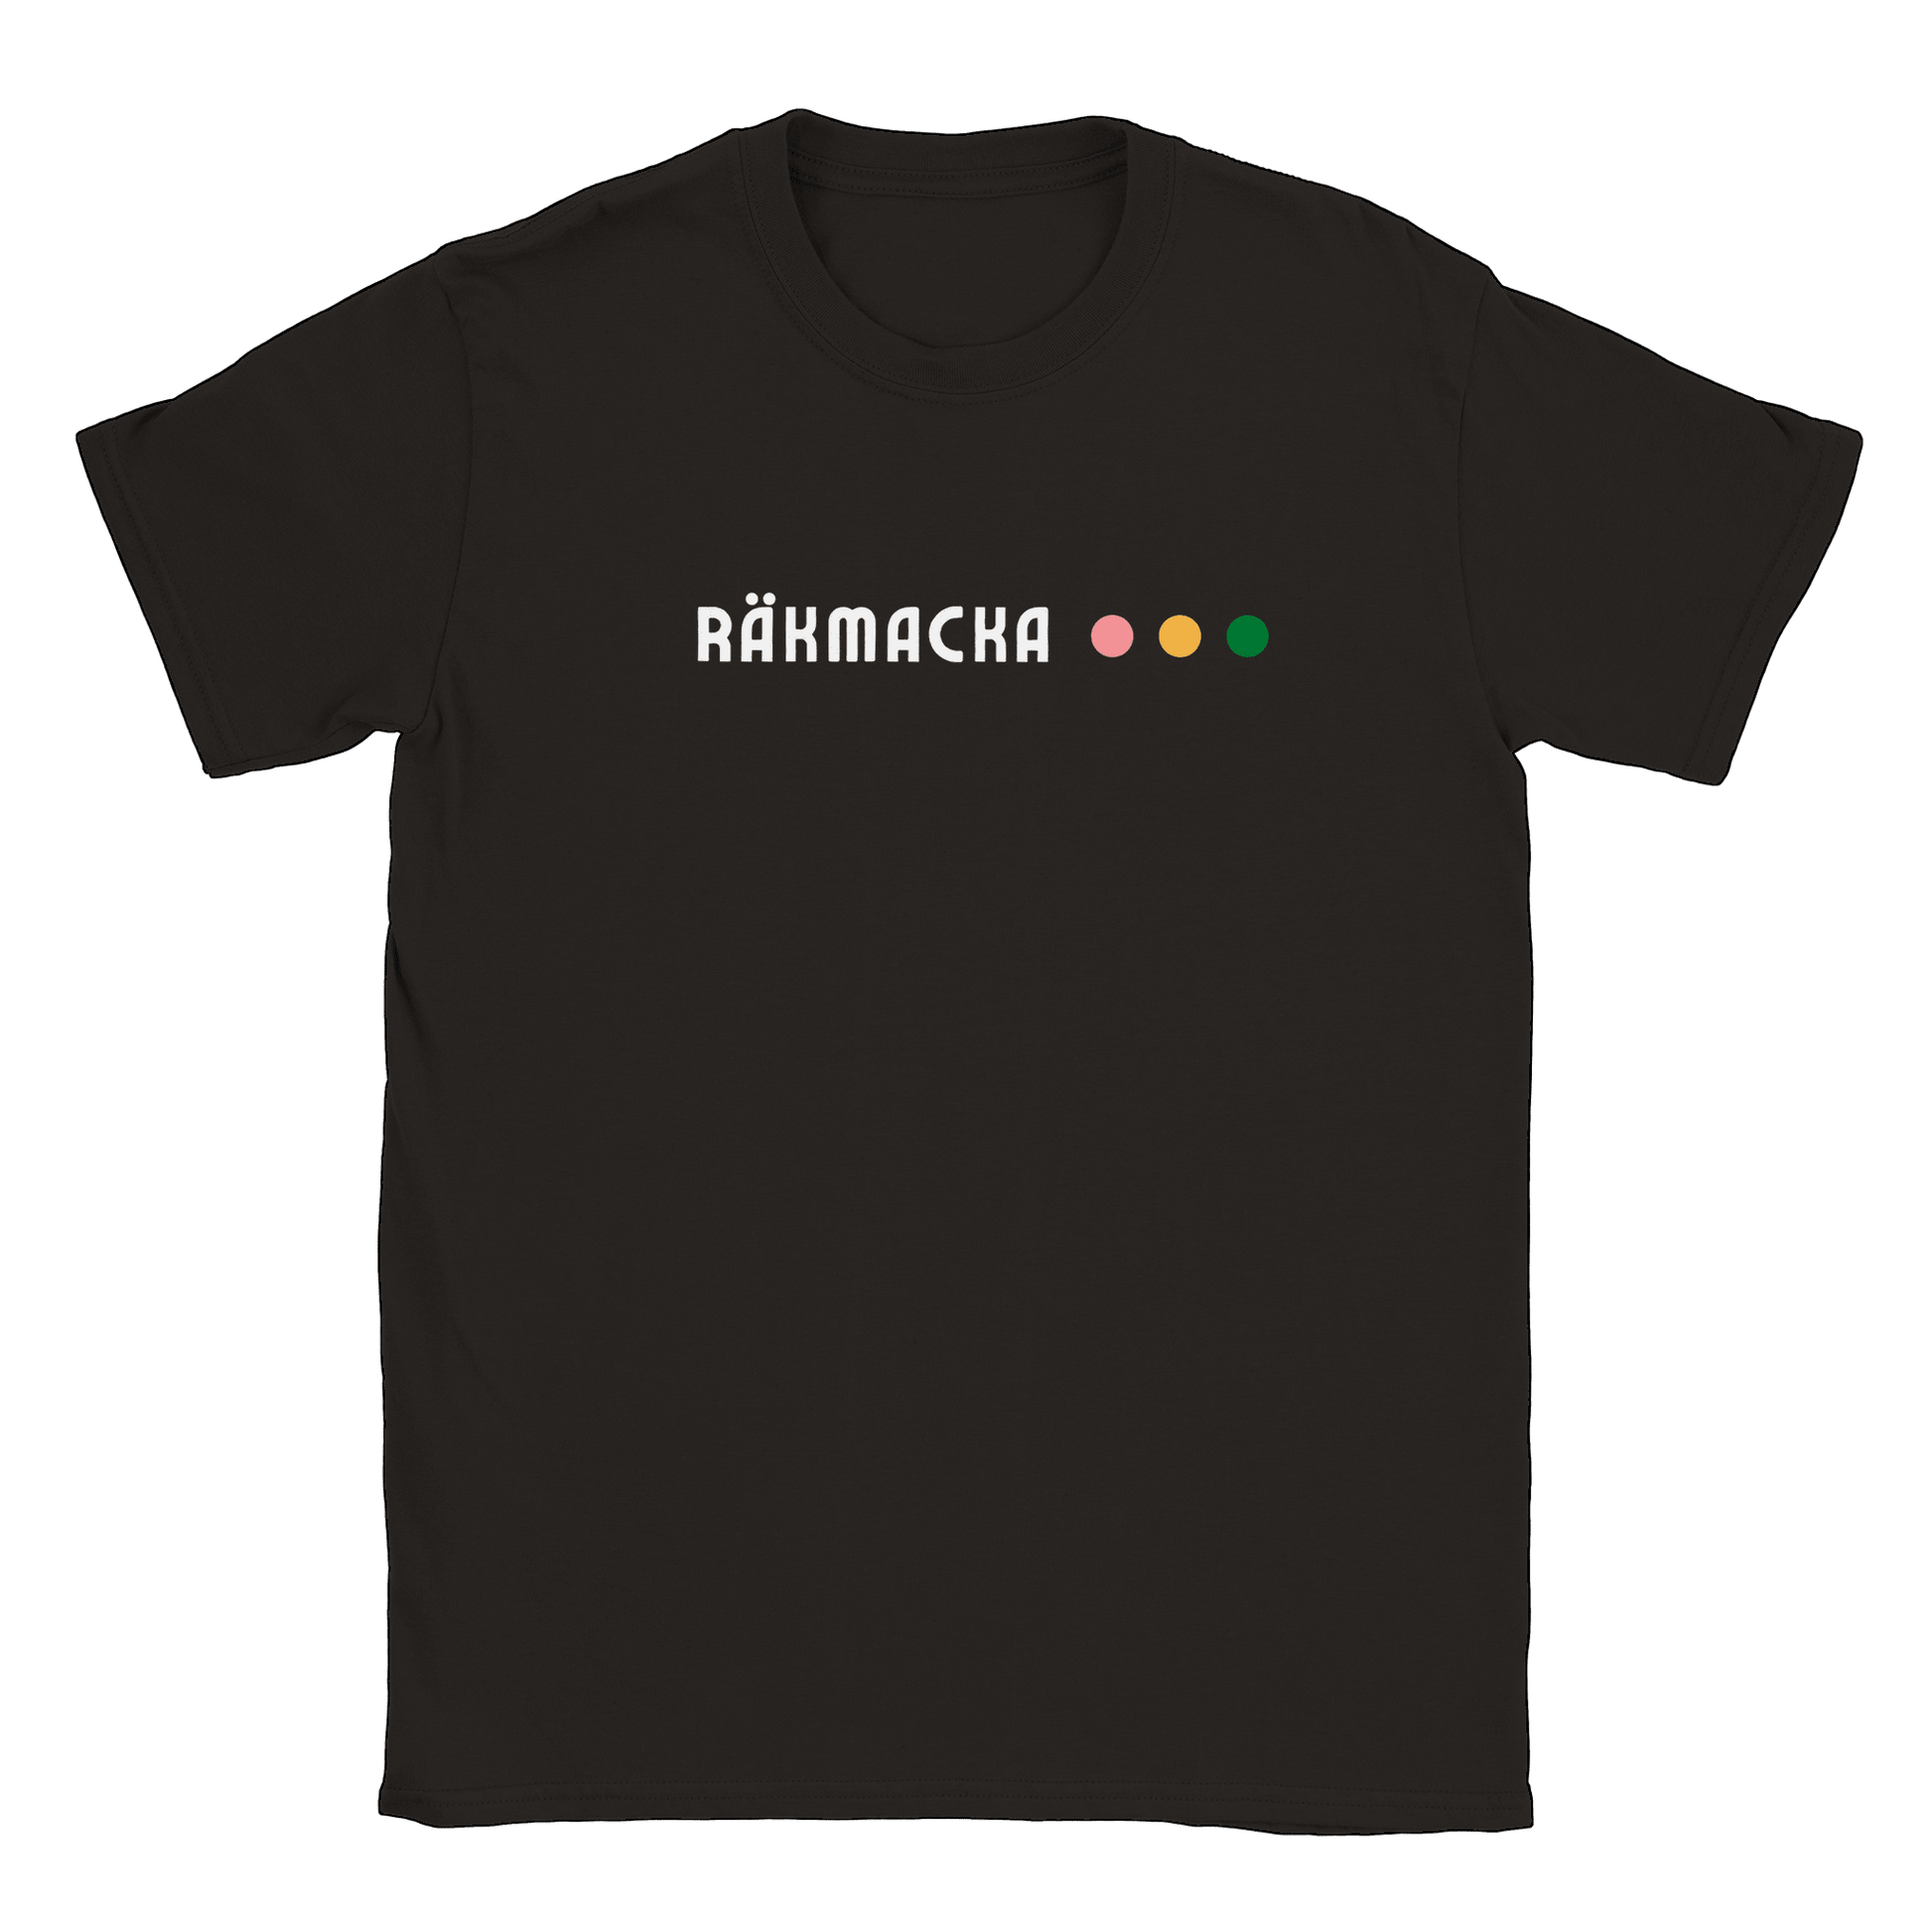 Räkmacka - T-shirt Svart